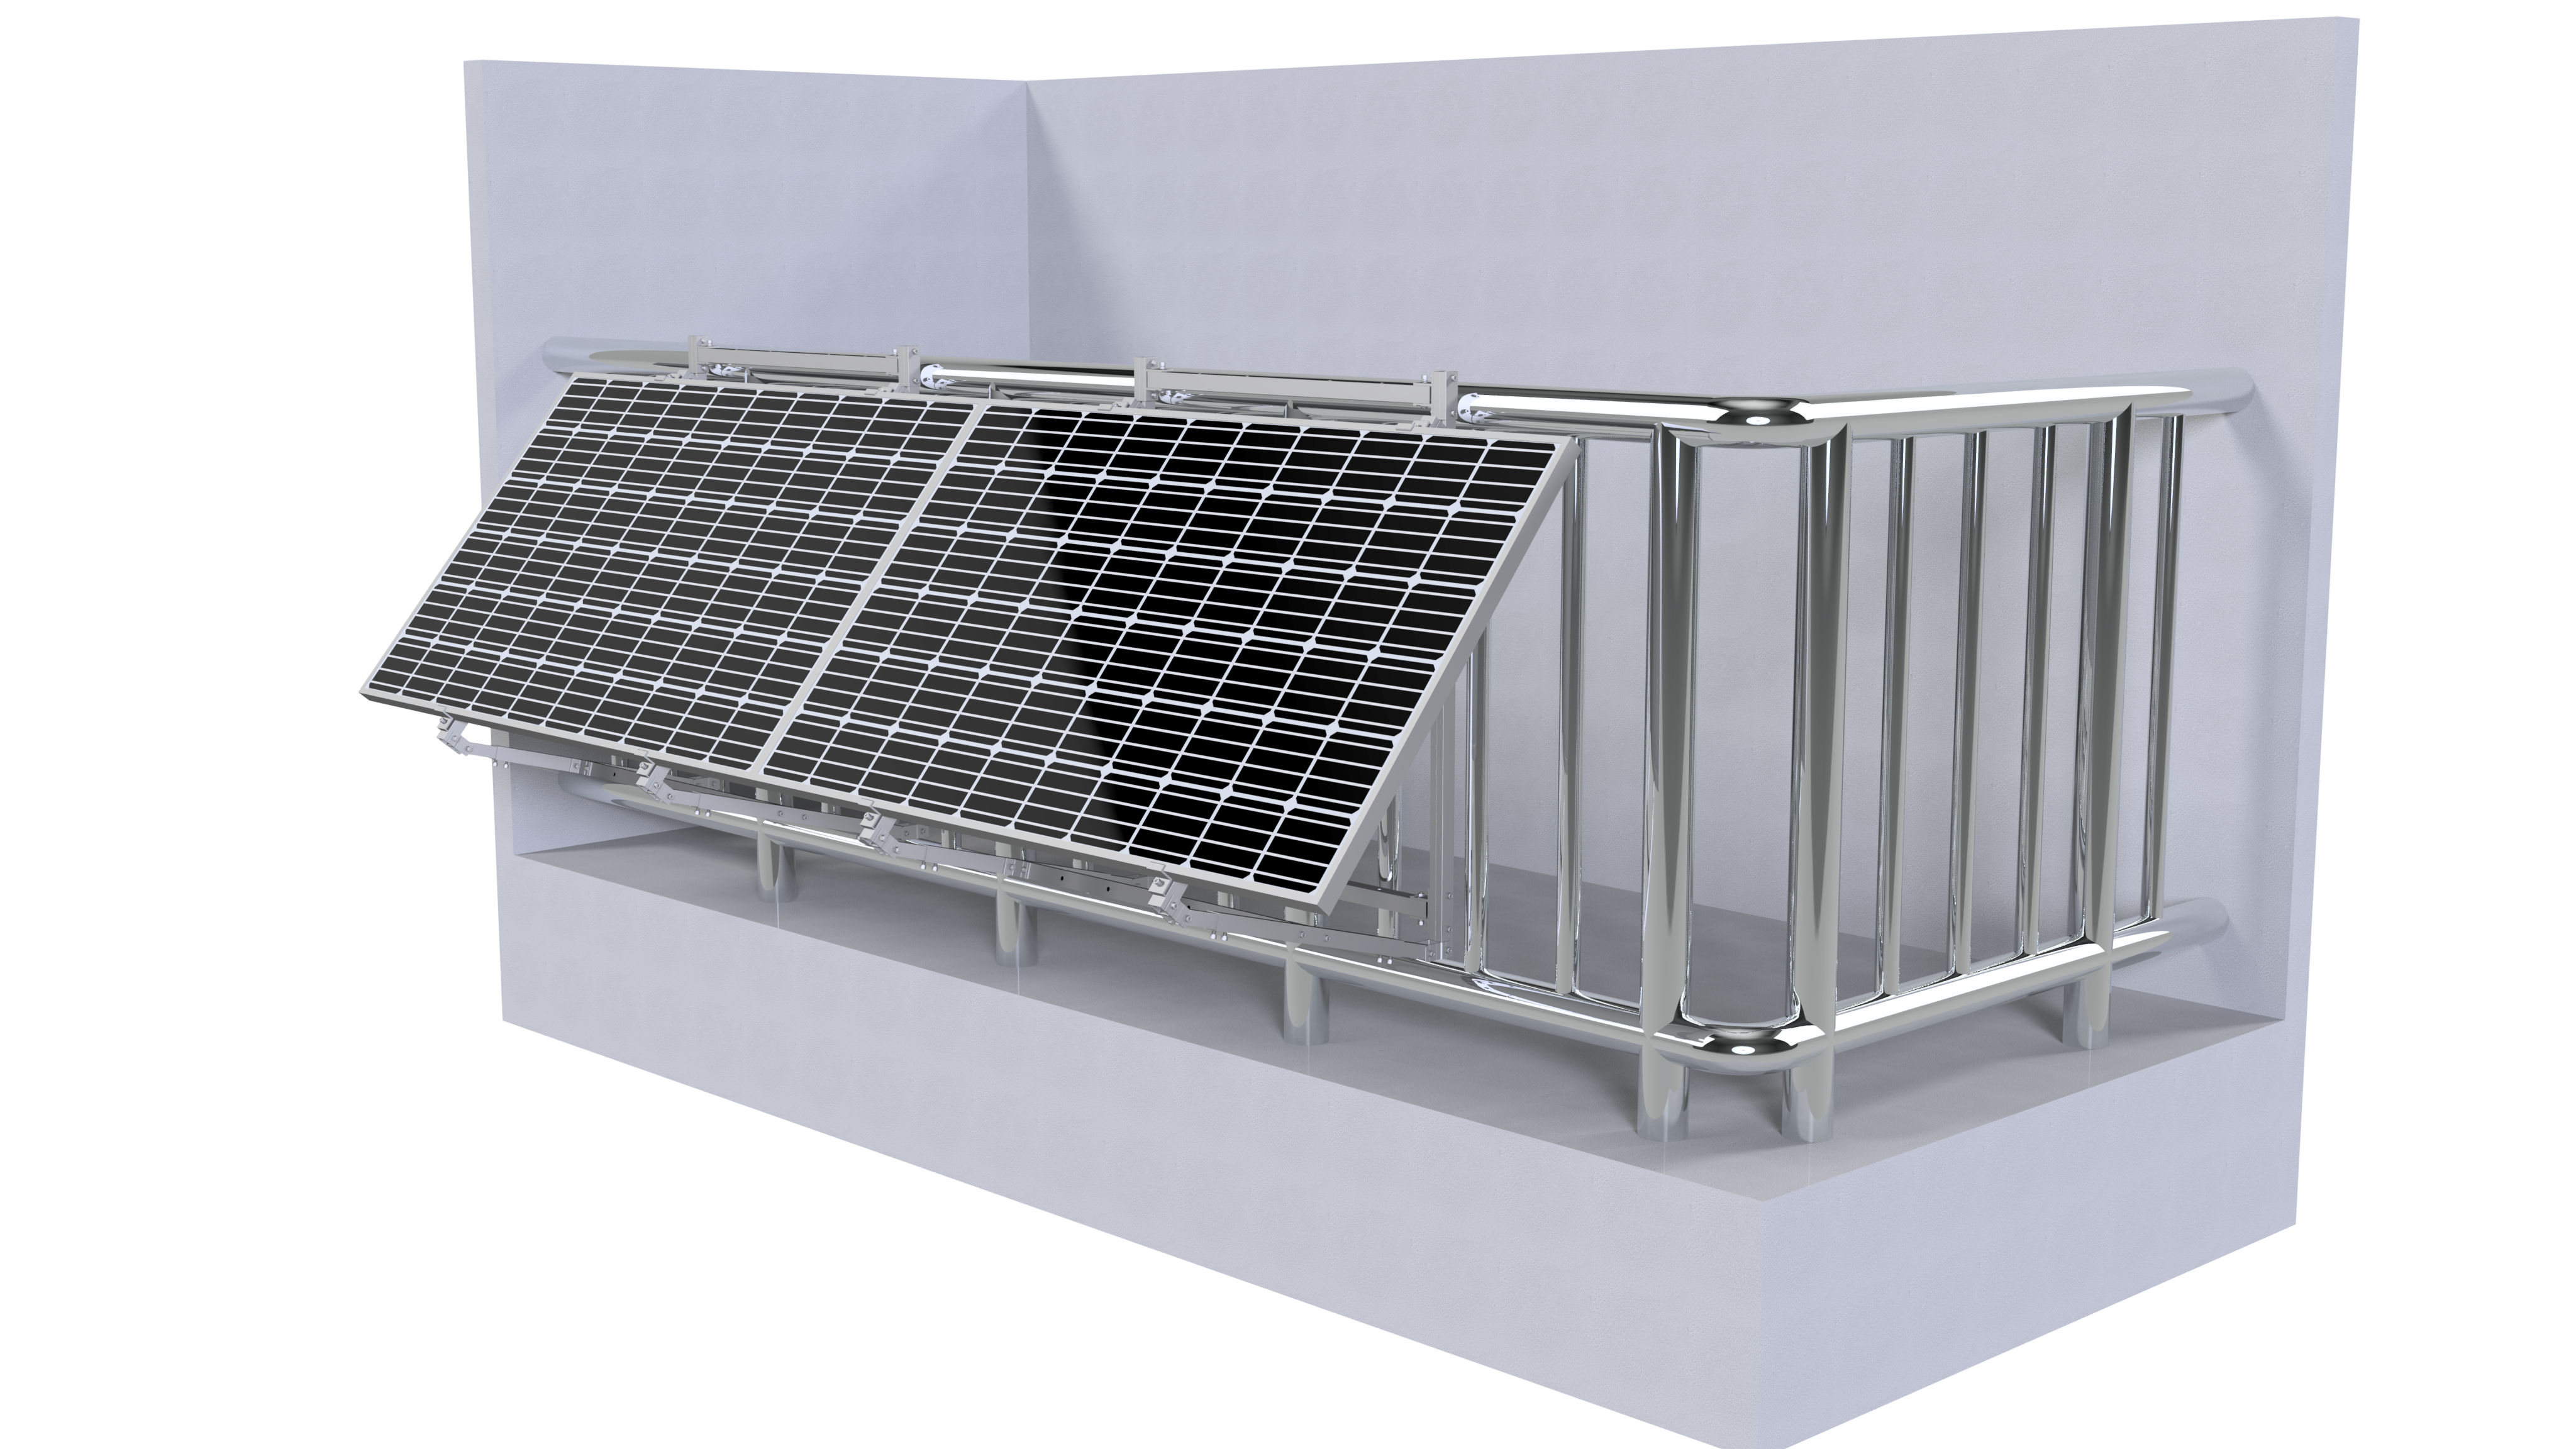  21018- Komplettpaket Solarpanel 1640W schwarz + 1500w Micro-Wechselrichter, sofort lieferbar